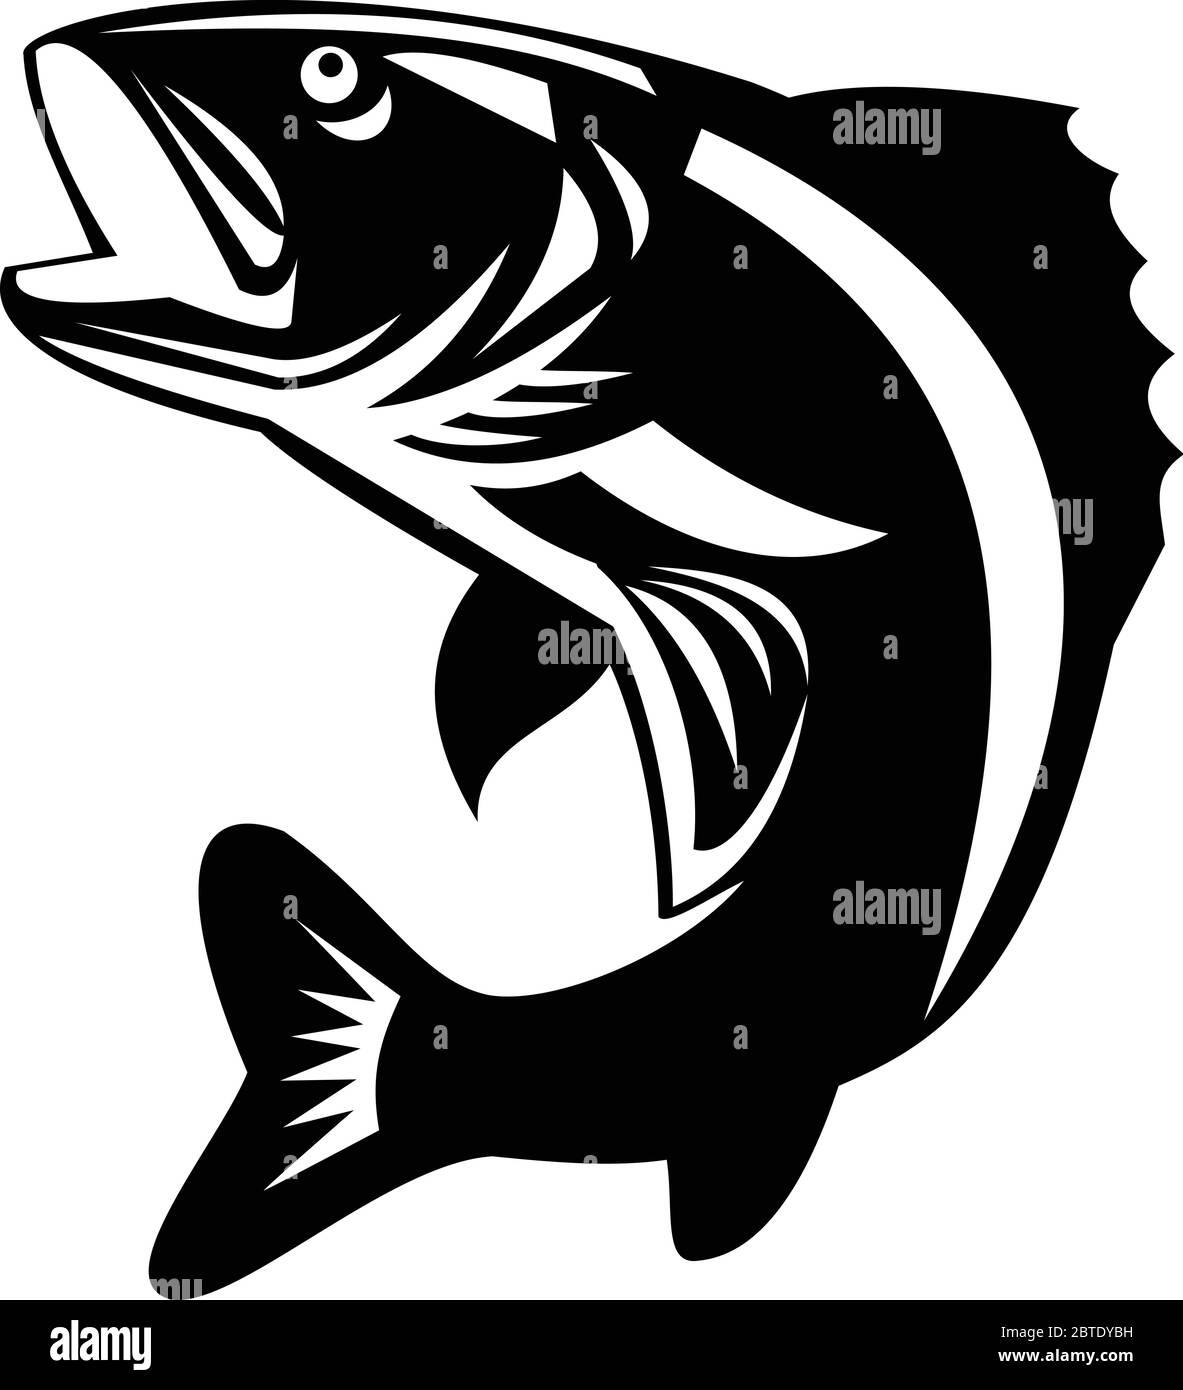 Illustration noire et blanche d'un doré jaune (Sander vitreus, anciennement Stizostedion vitreum), un poisson périforme d'eau douce qui saute à la vue de la dsri Illustration de Vecteur